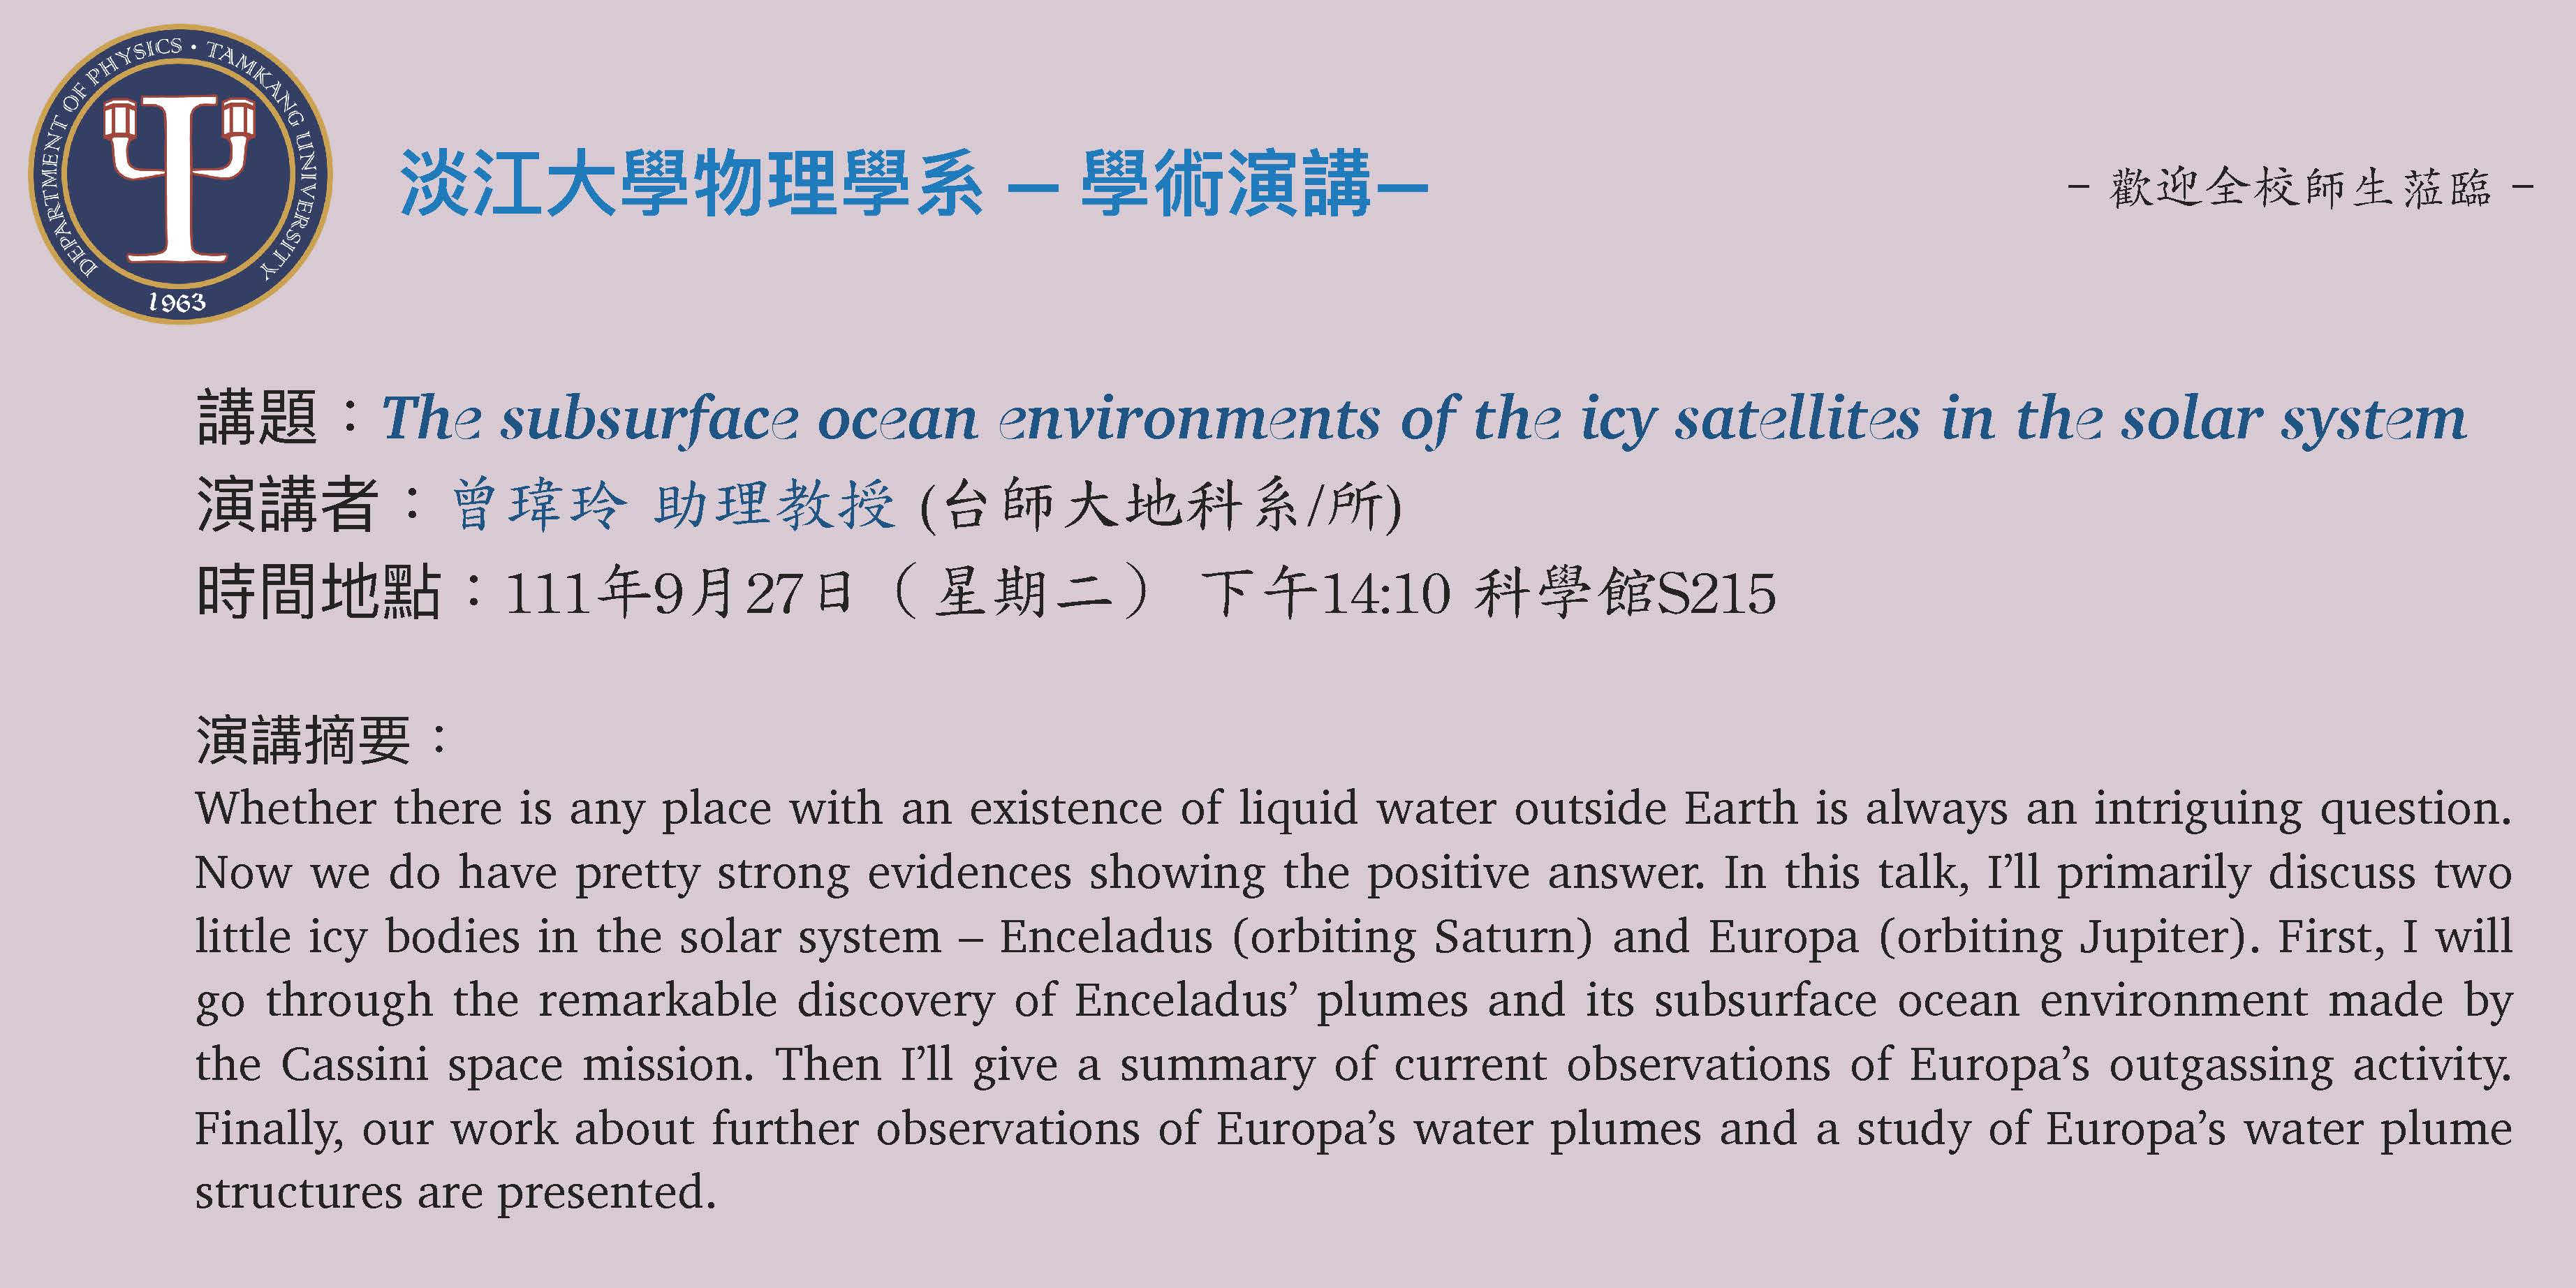 【演講】111.9.27 講題：The subsurface ocean environments of the icy satellites in the solar system